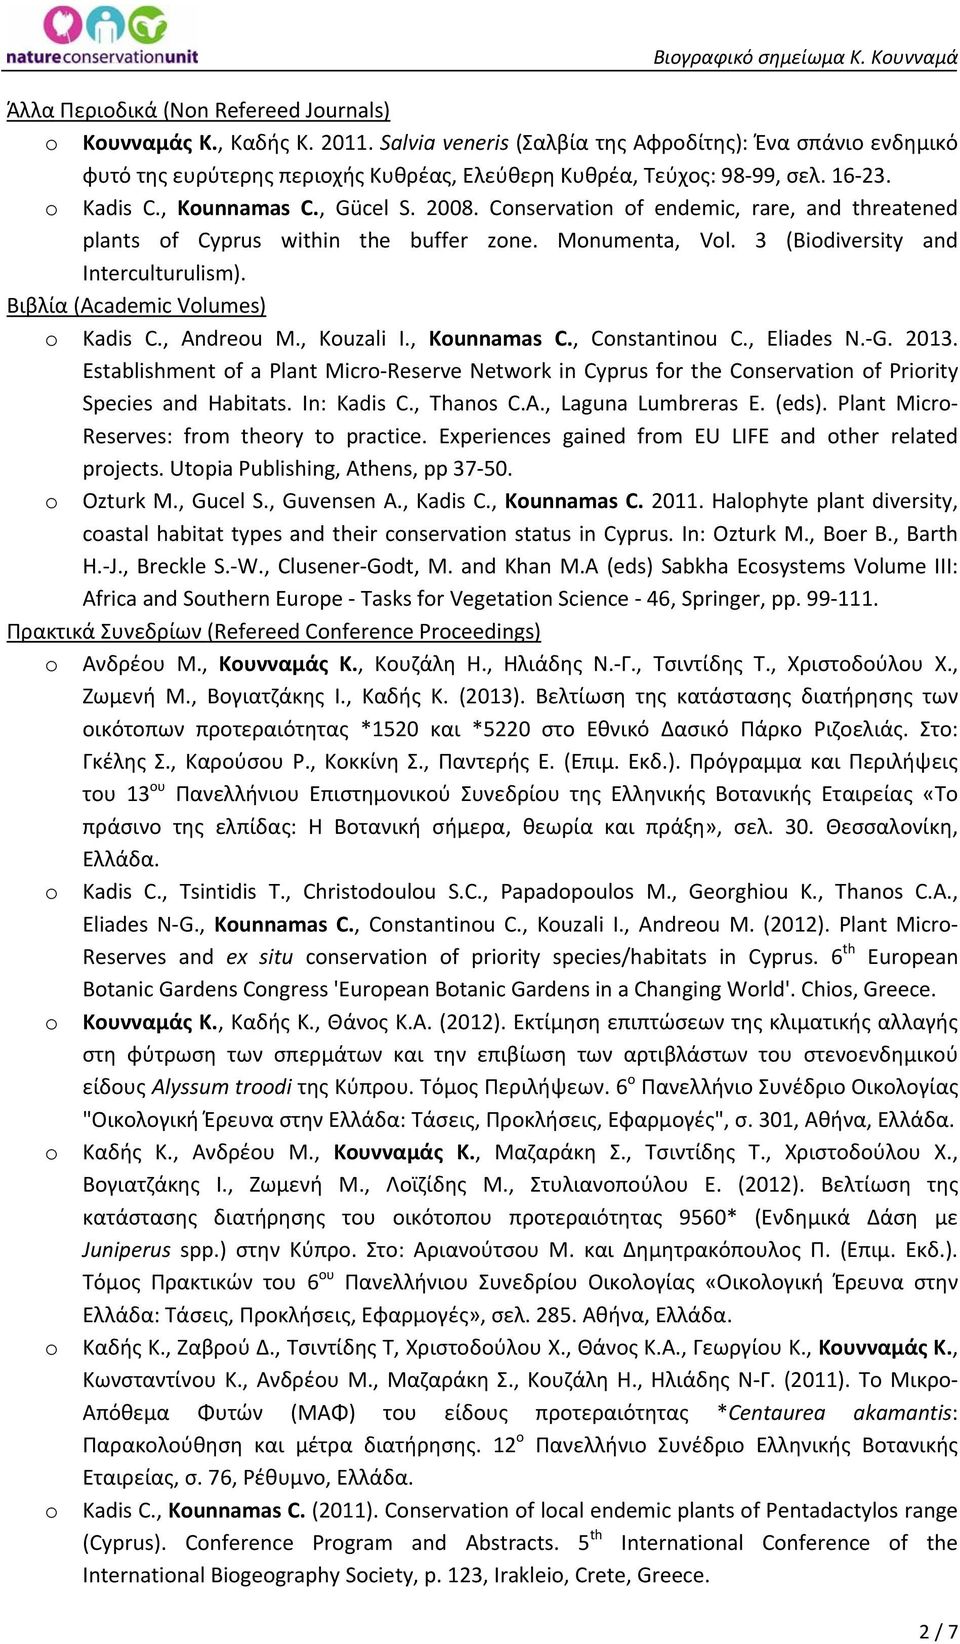 Βιβλία (Academic Vlumes) Kadis C., Andreu M., Kuzali I., Kunnamas C., Cnstantinu C., Eliades N. G. 2013.